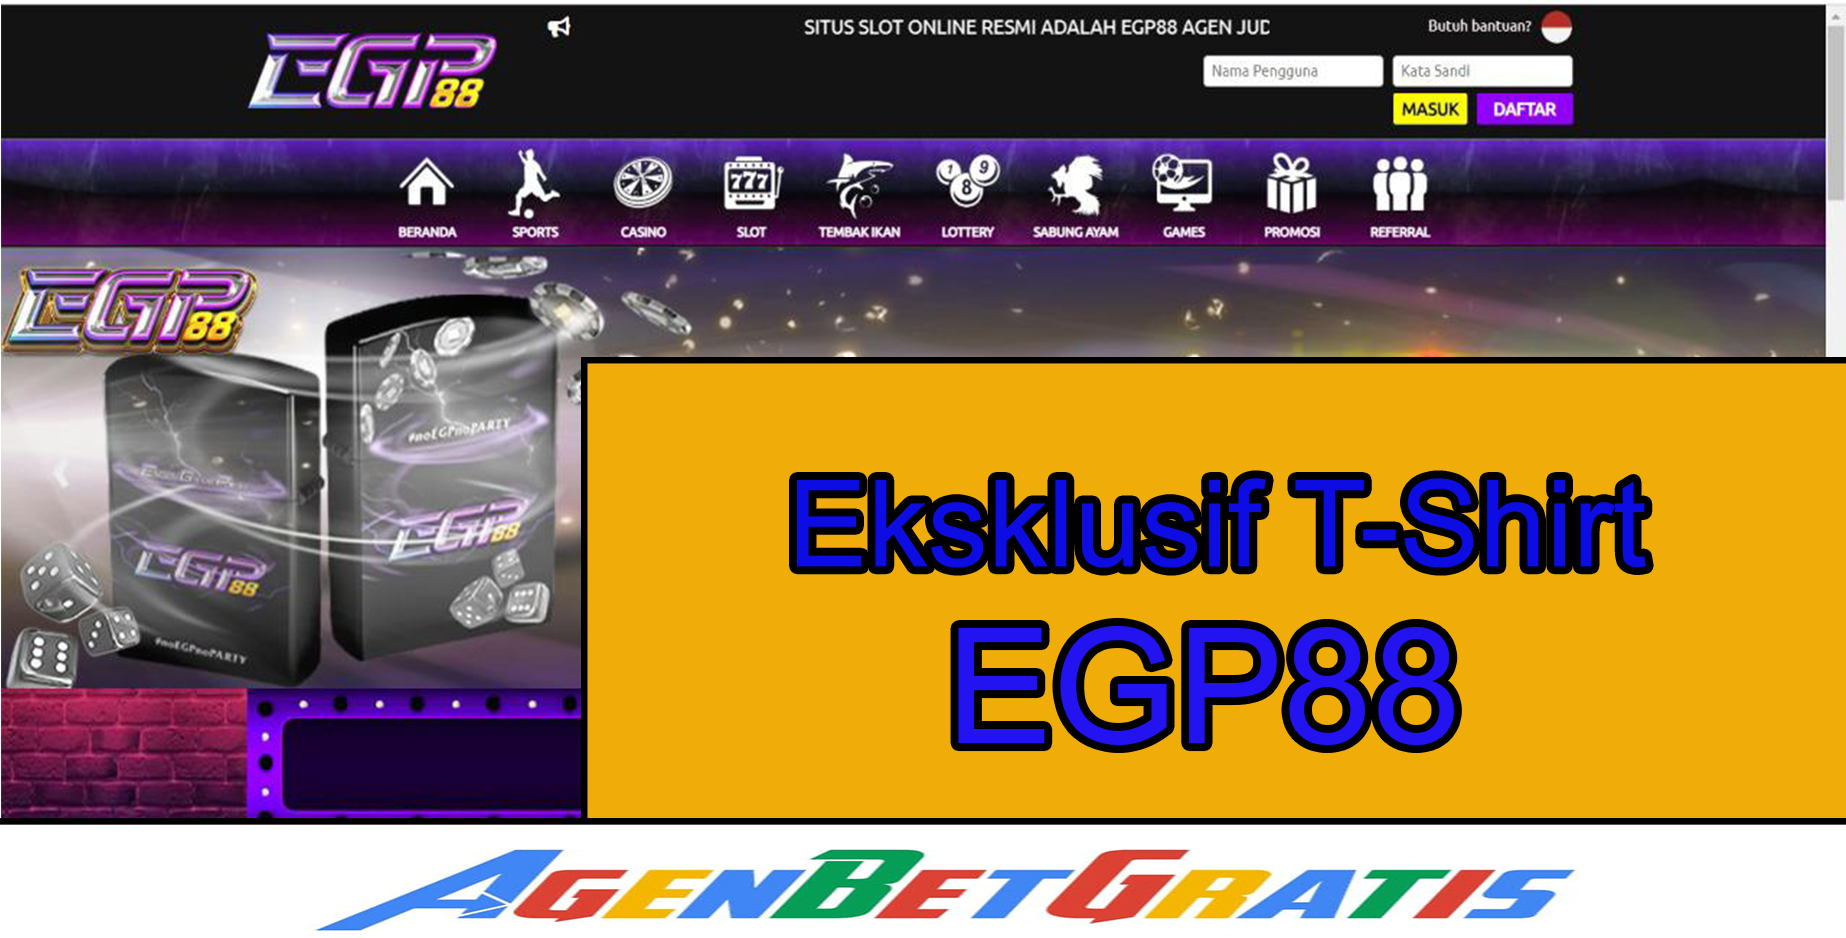 EGP88 - Eksklusif T-Shirt